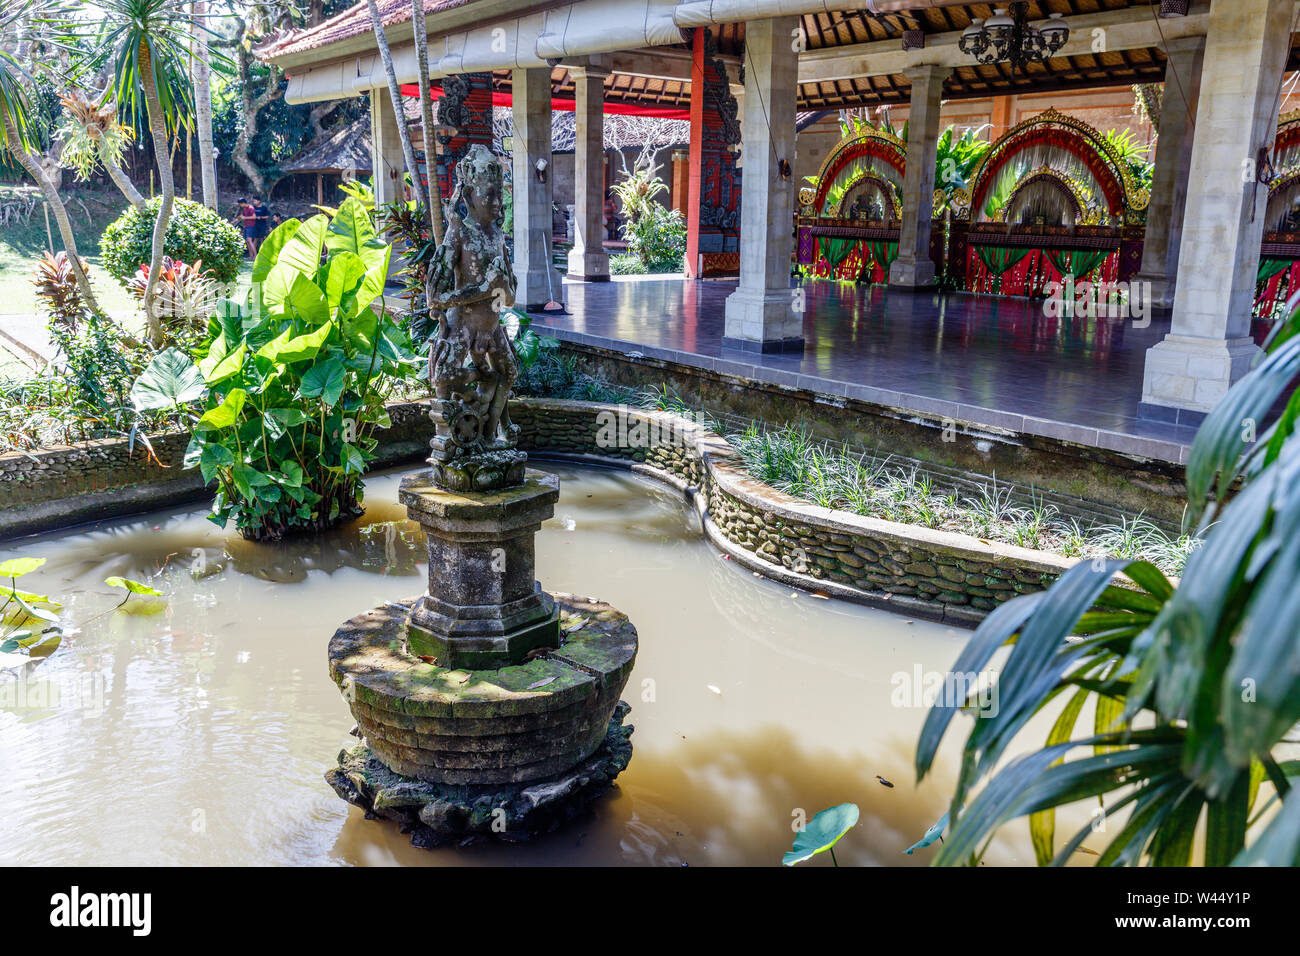 Brunnen in den Teich im Garten der Kunst Museum Puri Lukisan in Ubud, Bali, Indonesien. Stockfoto